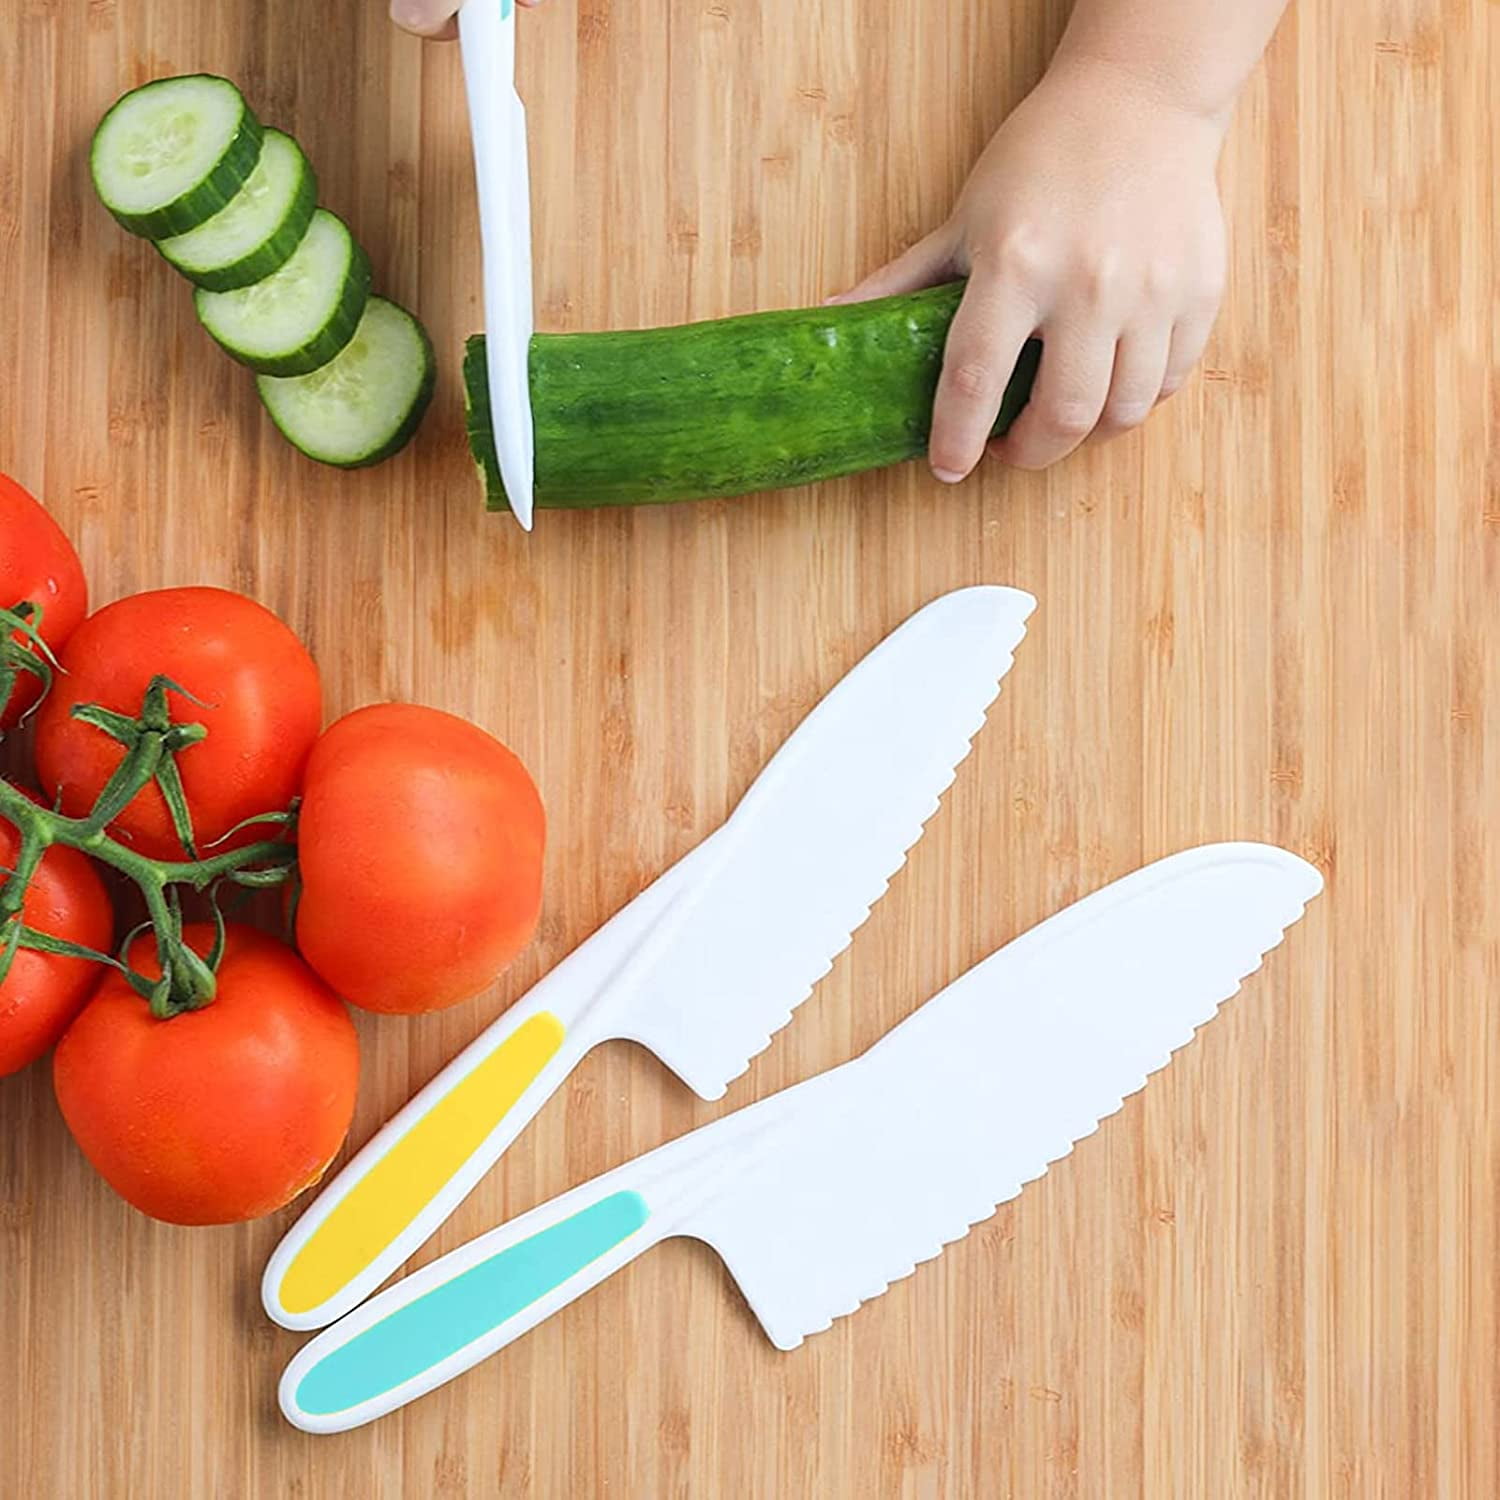 Kids Knife Set, Kitchen Baking Knife Set with Crinkle Cutter, Serrated  Edges Plastic Toddler Knife Kids Safe Knives for Real Cooking & Cutting  Fruit, Bread, Lettuce - Set of 4 